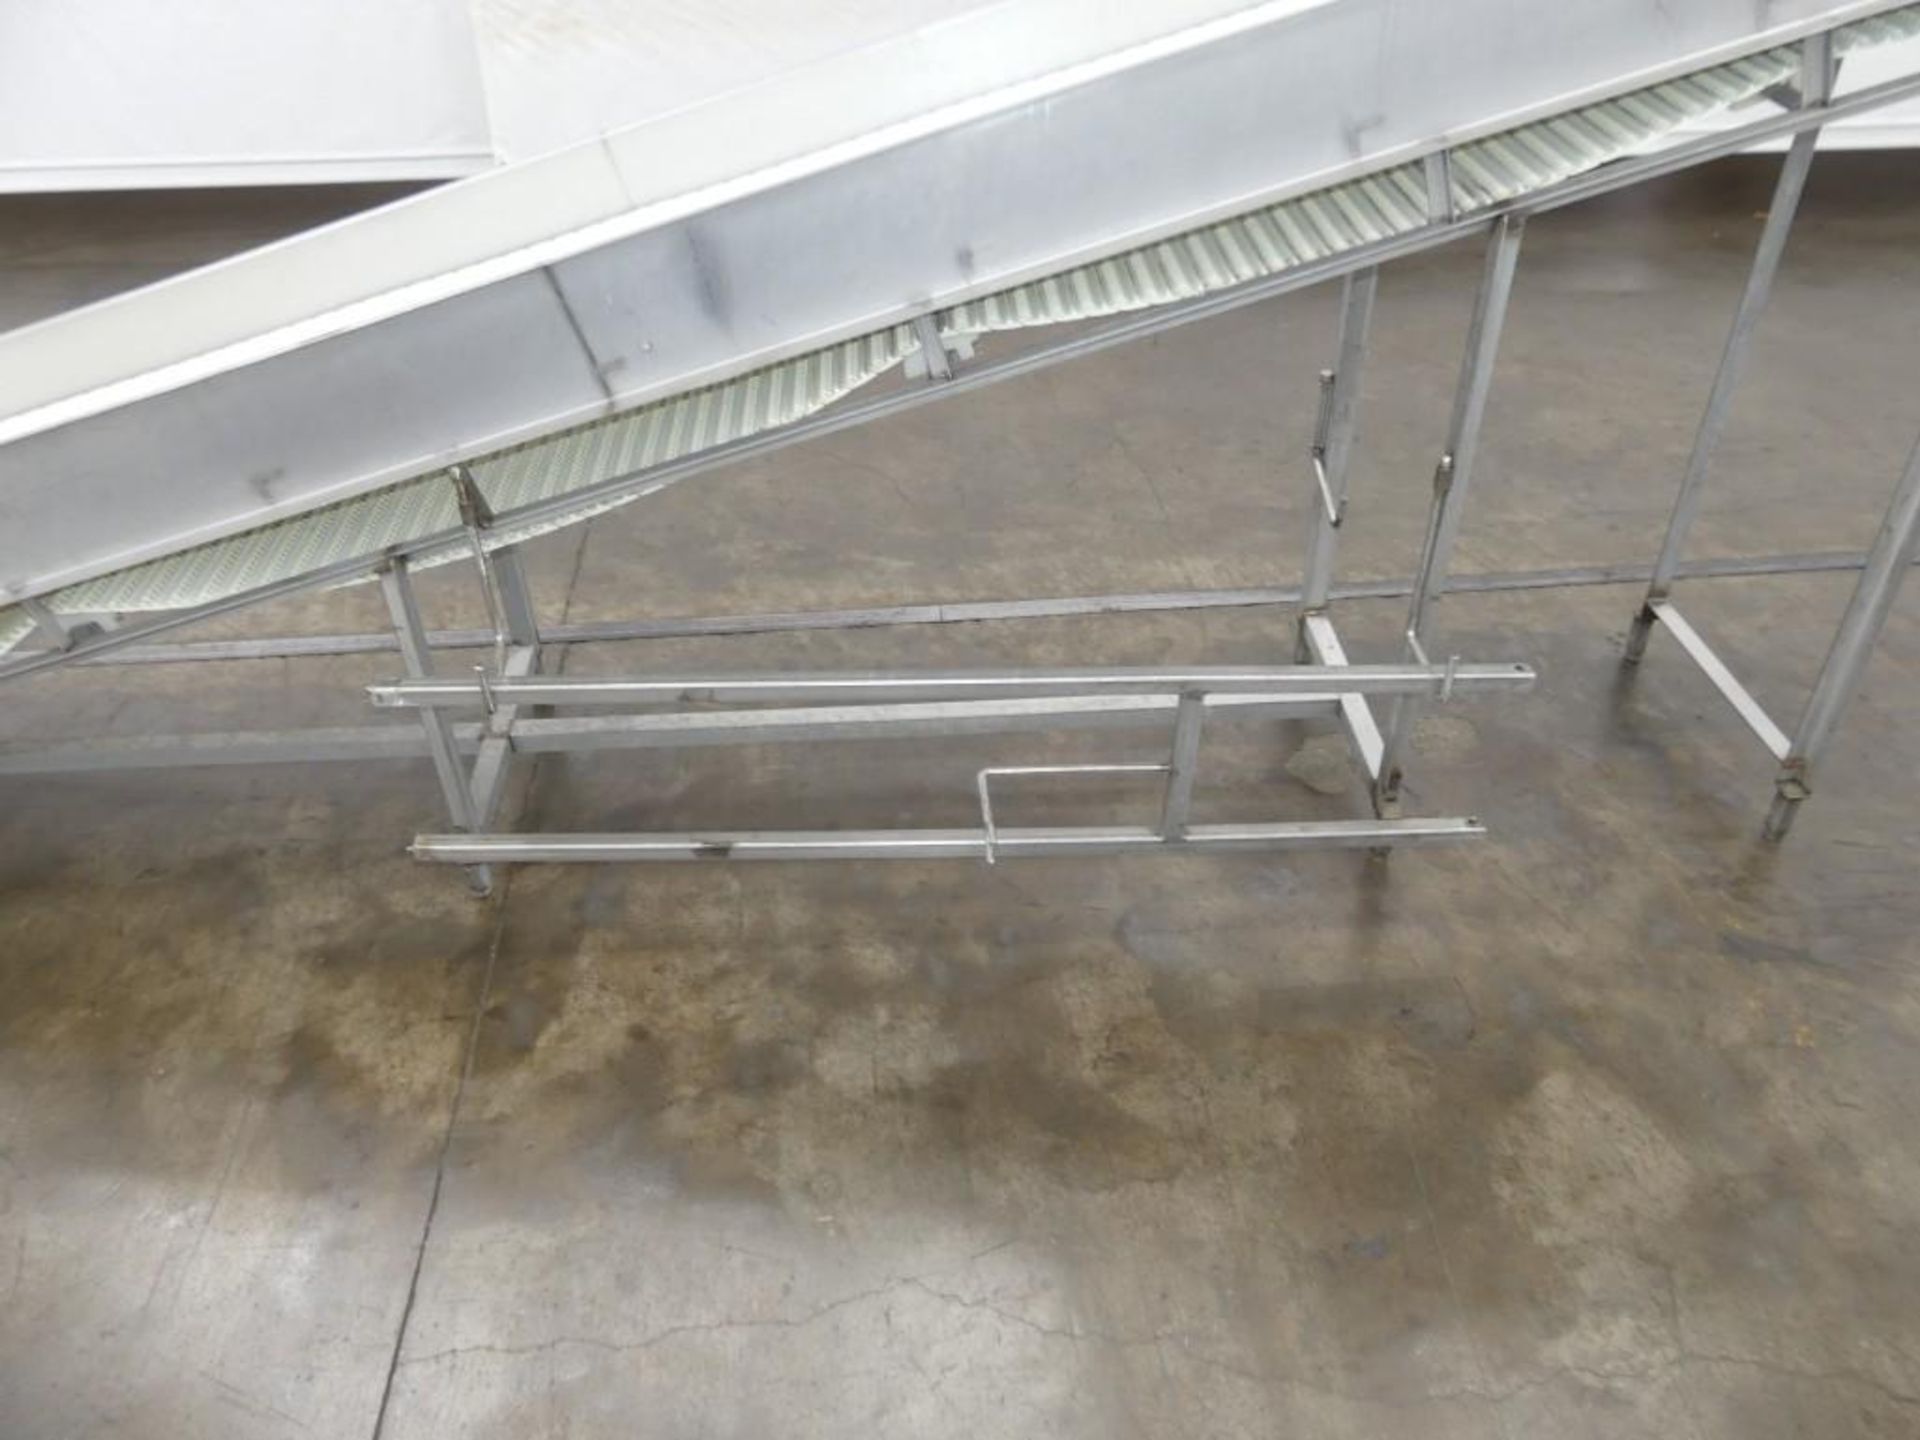 Plastic Mat Top 98" Discharge Incline Conveyor - Image 4 of 15